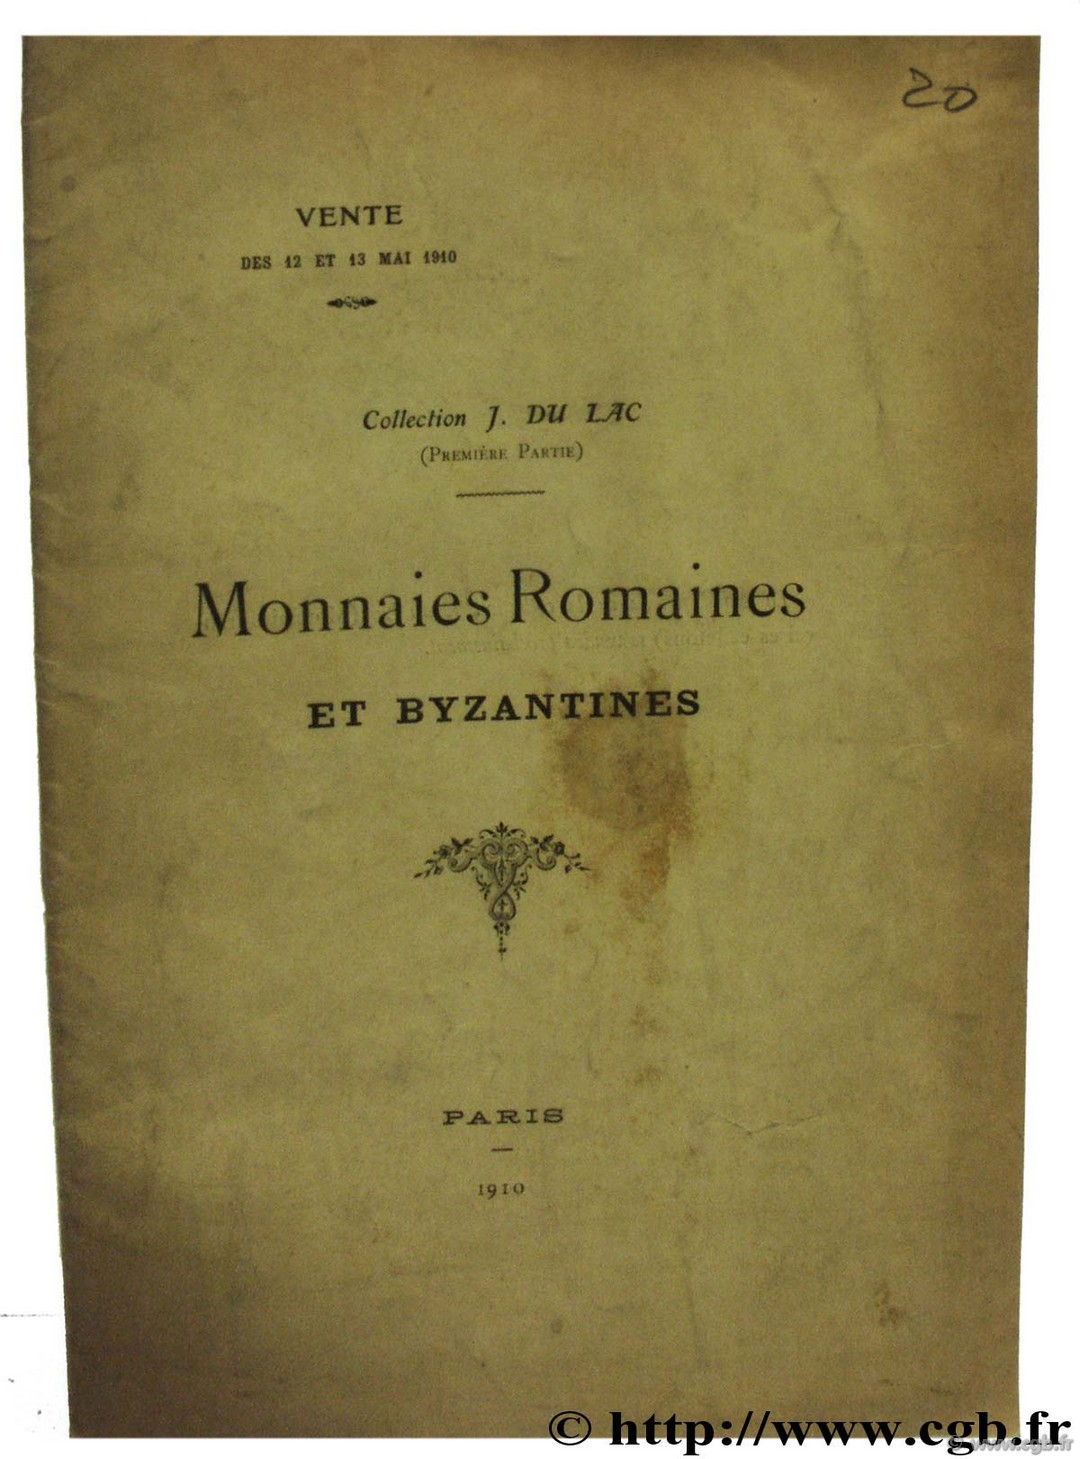 Monnaies romaines et byzantines, Collection J. du Lac FEUARDENT F., ROLLIN H.